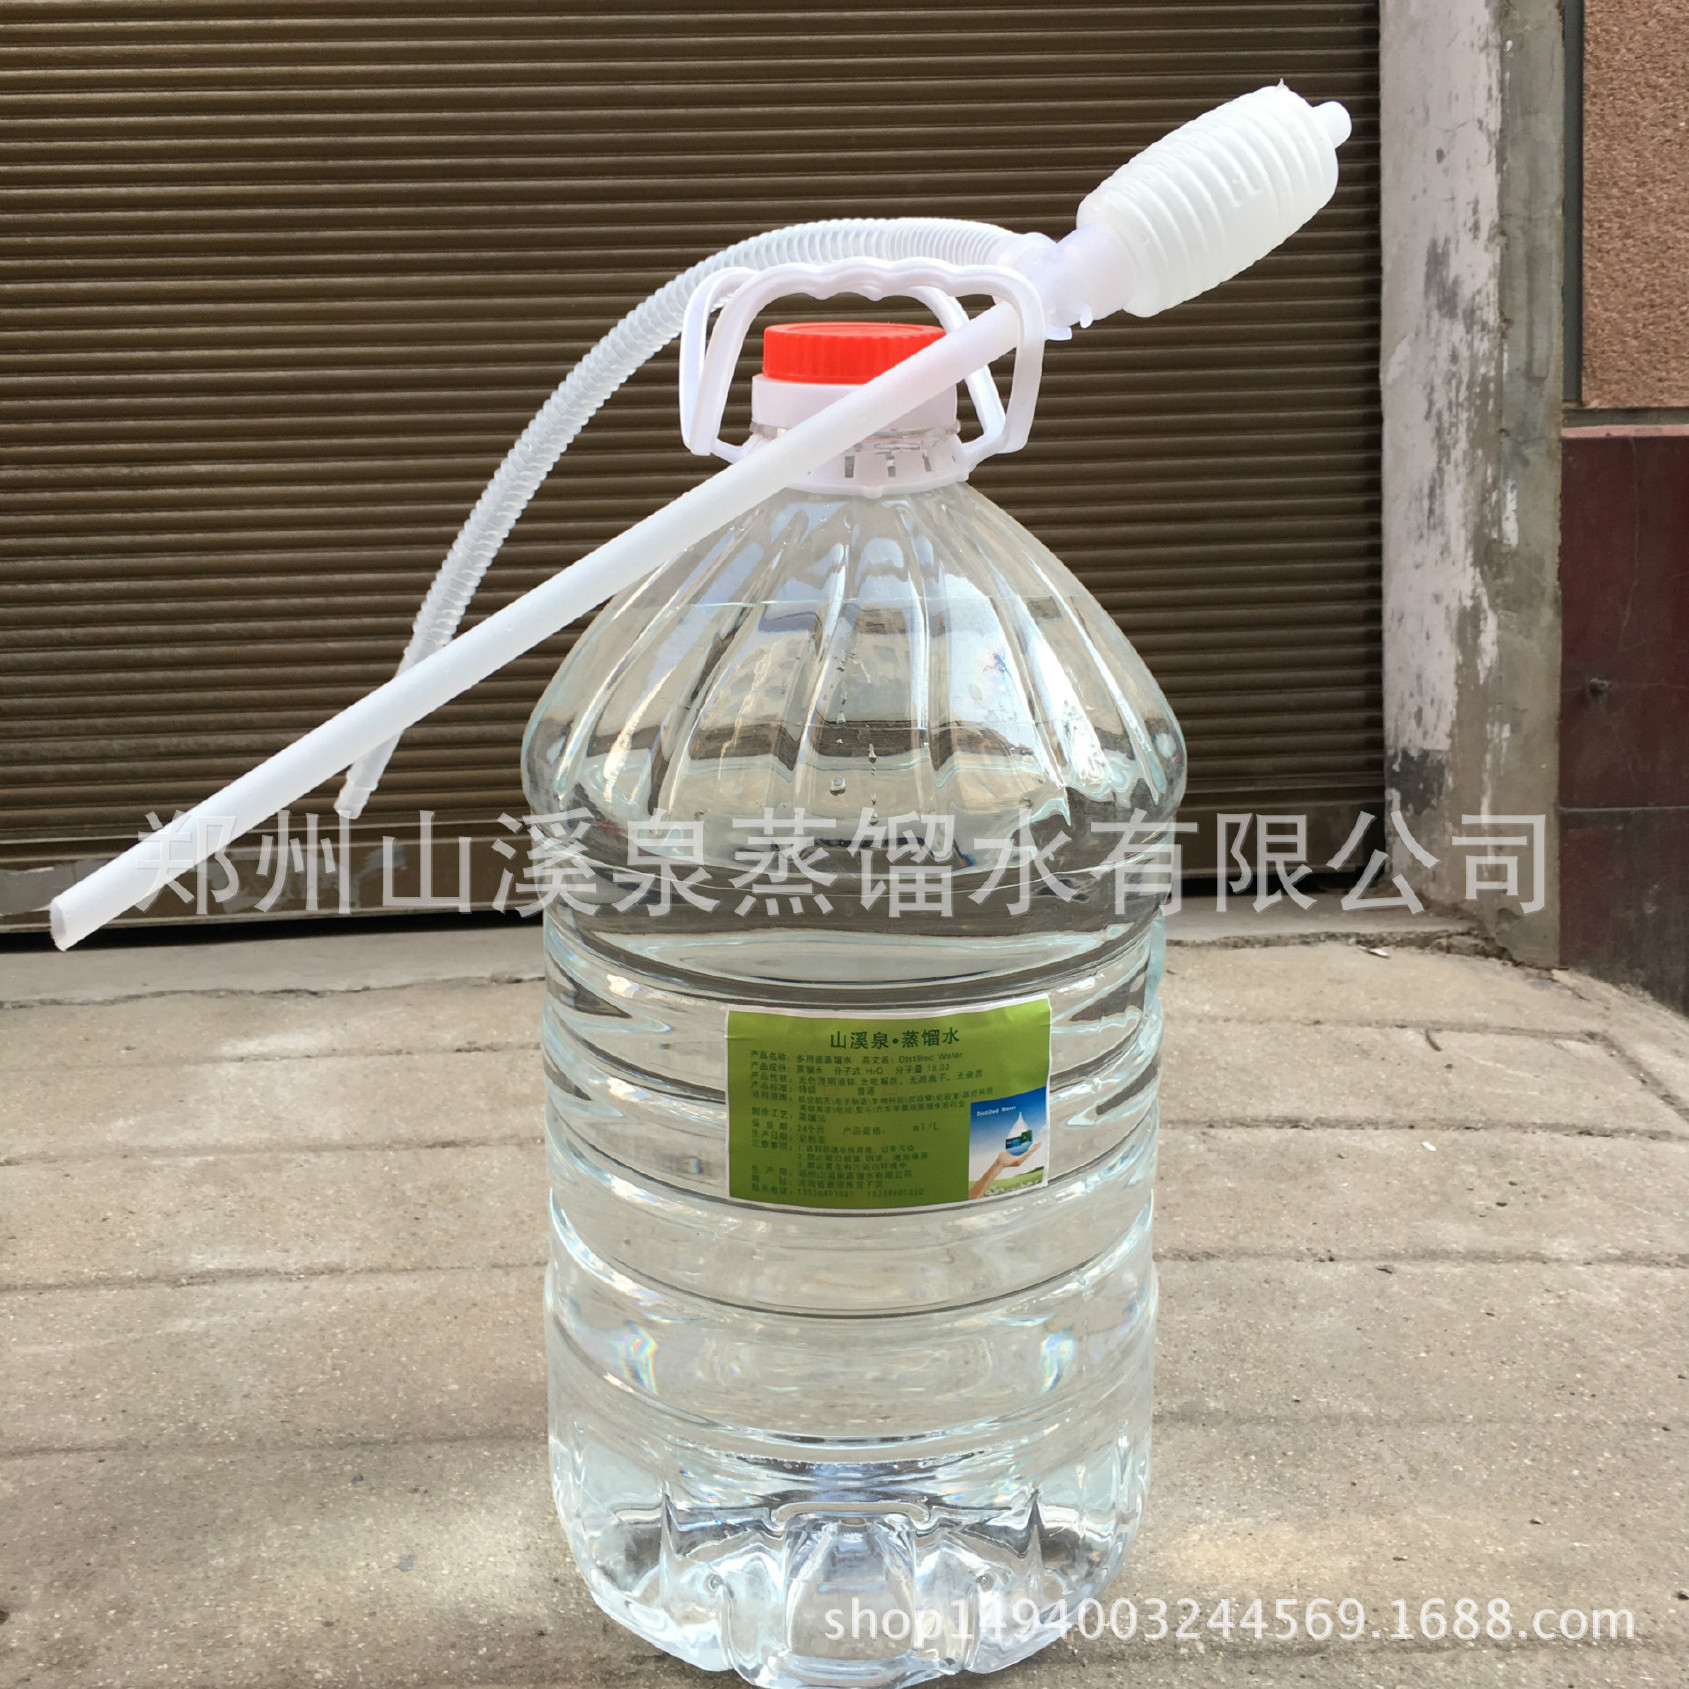 化验实验用蒸馏水郑州新品专卖示例图1